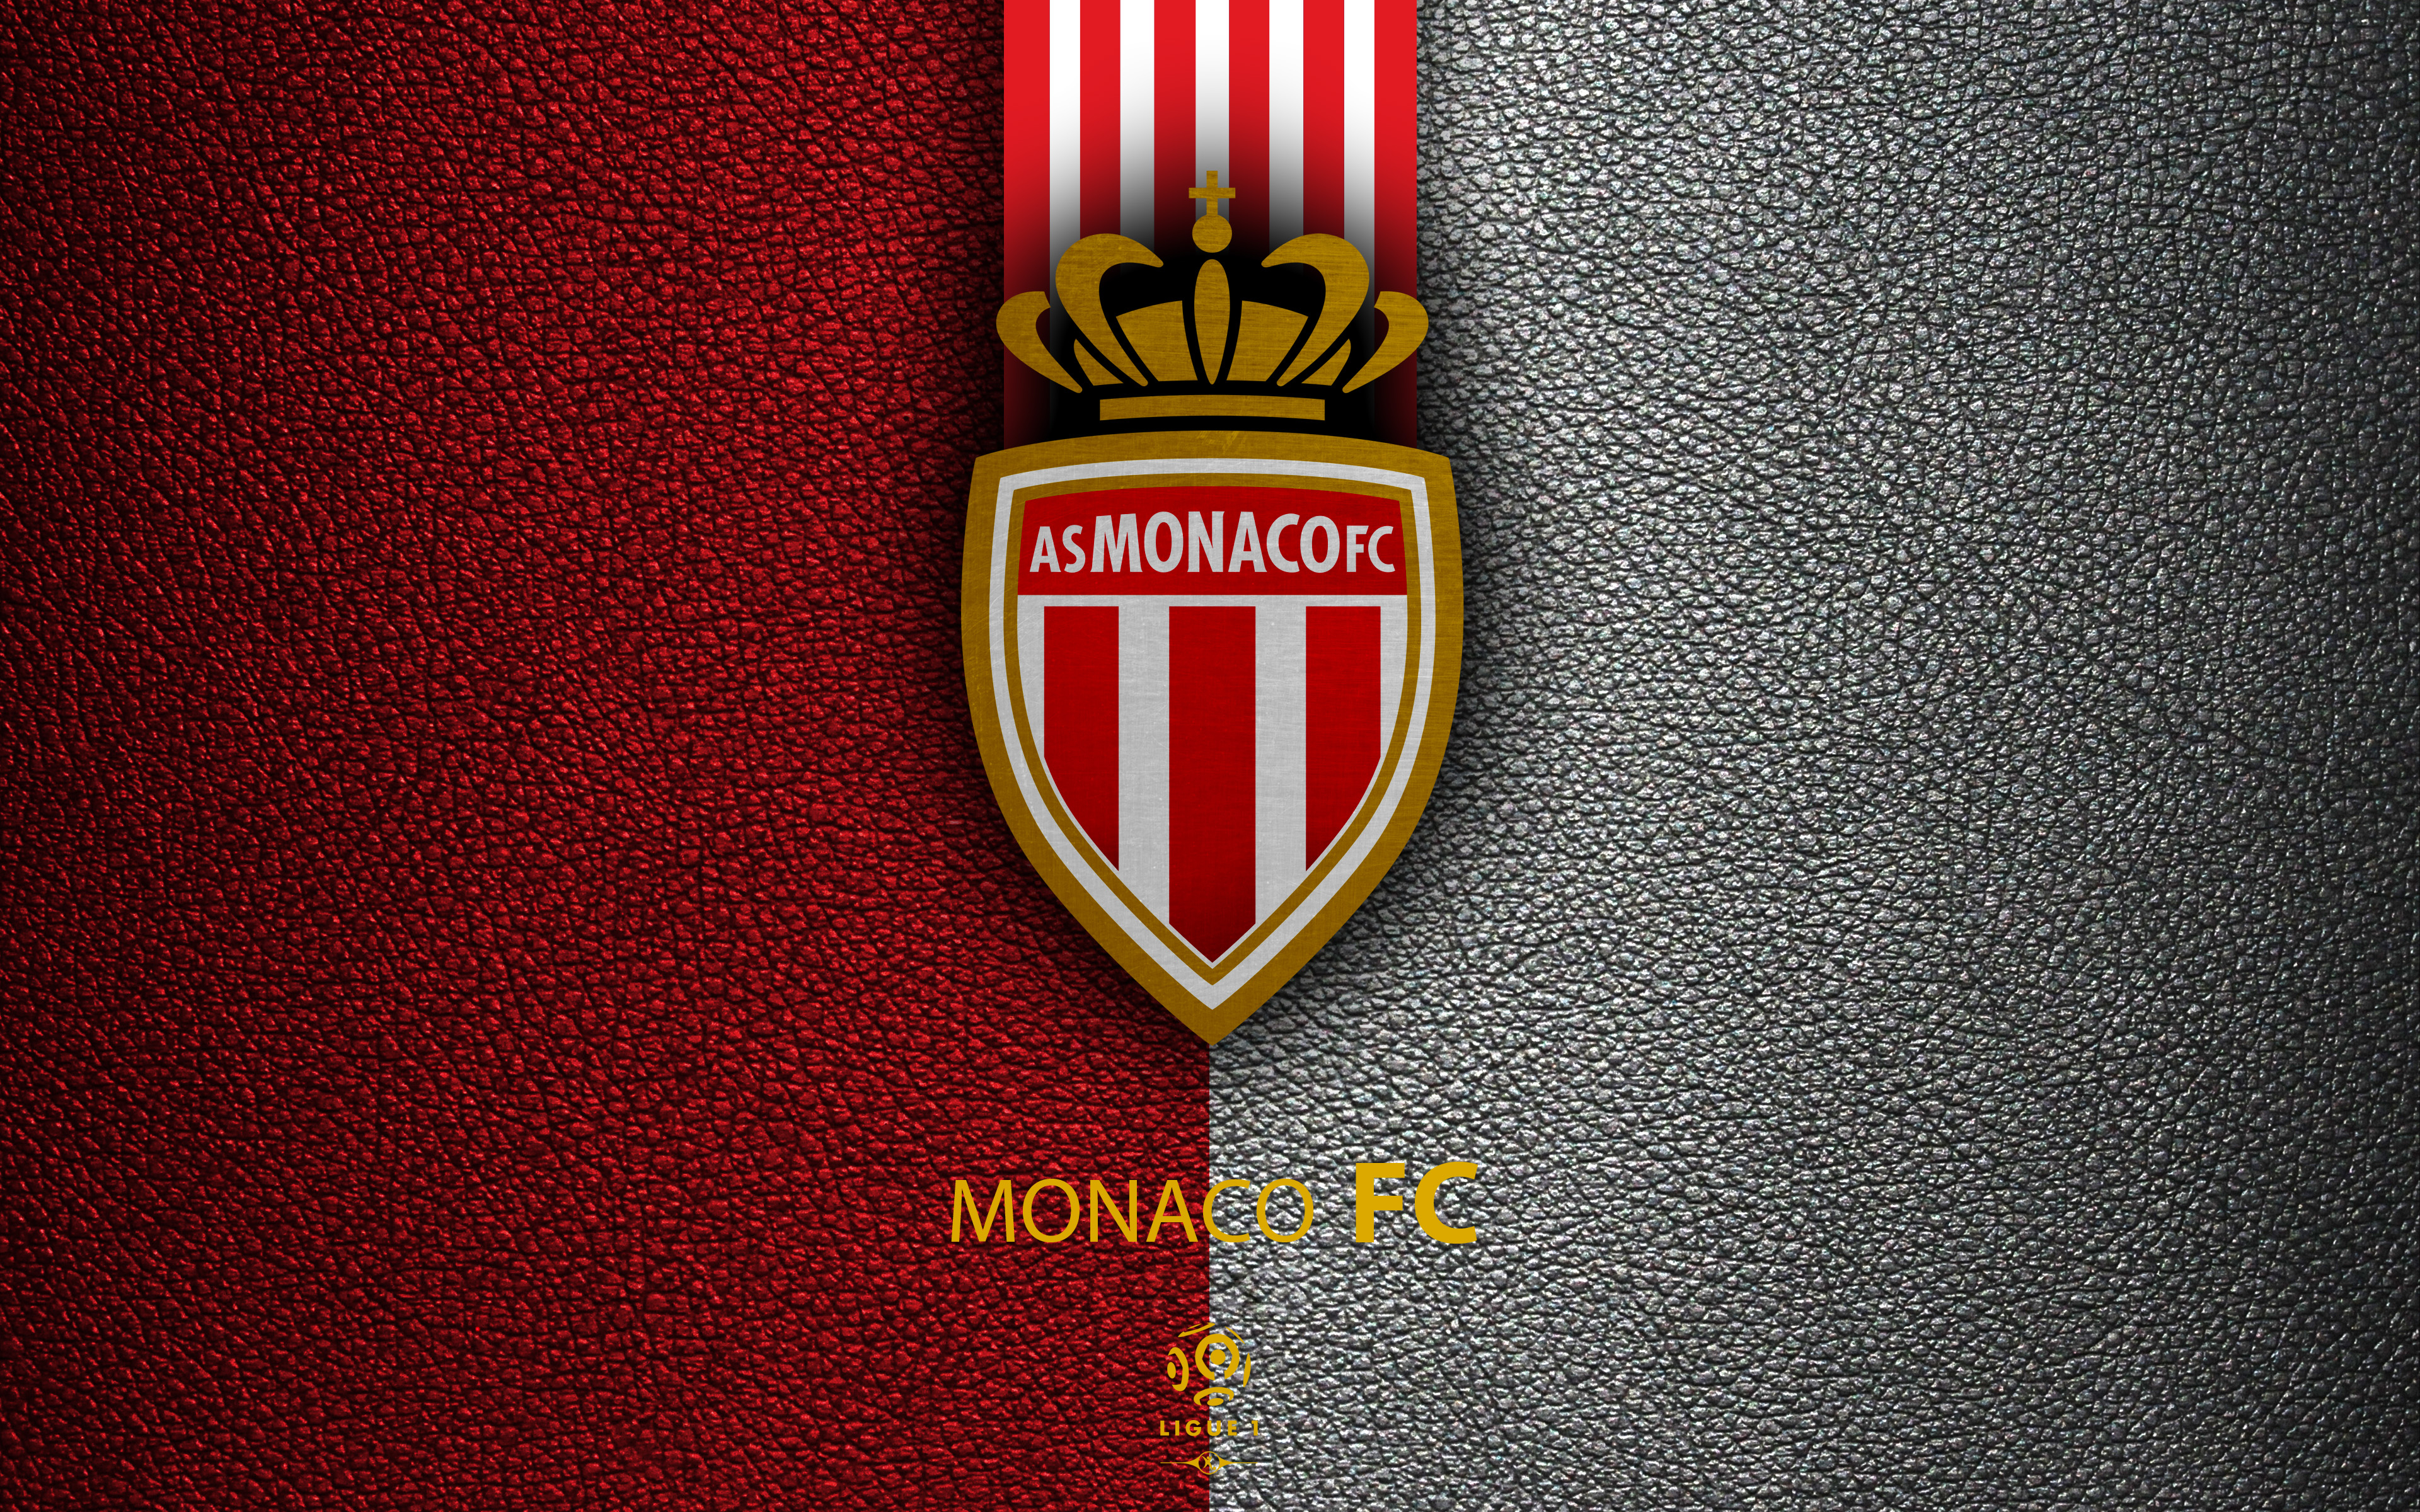 As Monaco Fc 4k Ultra HD Wallpaper Background Image